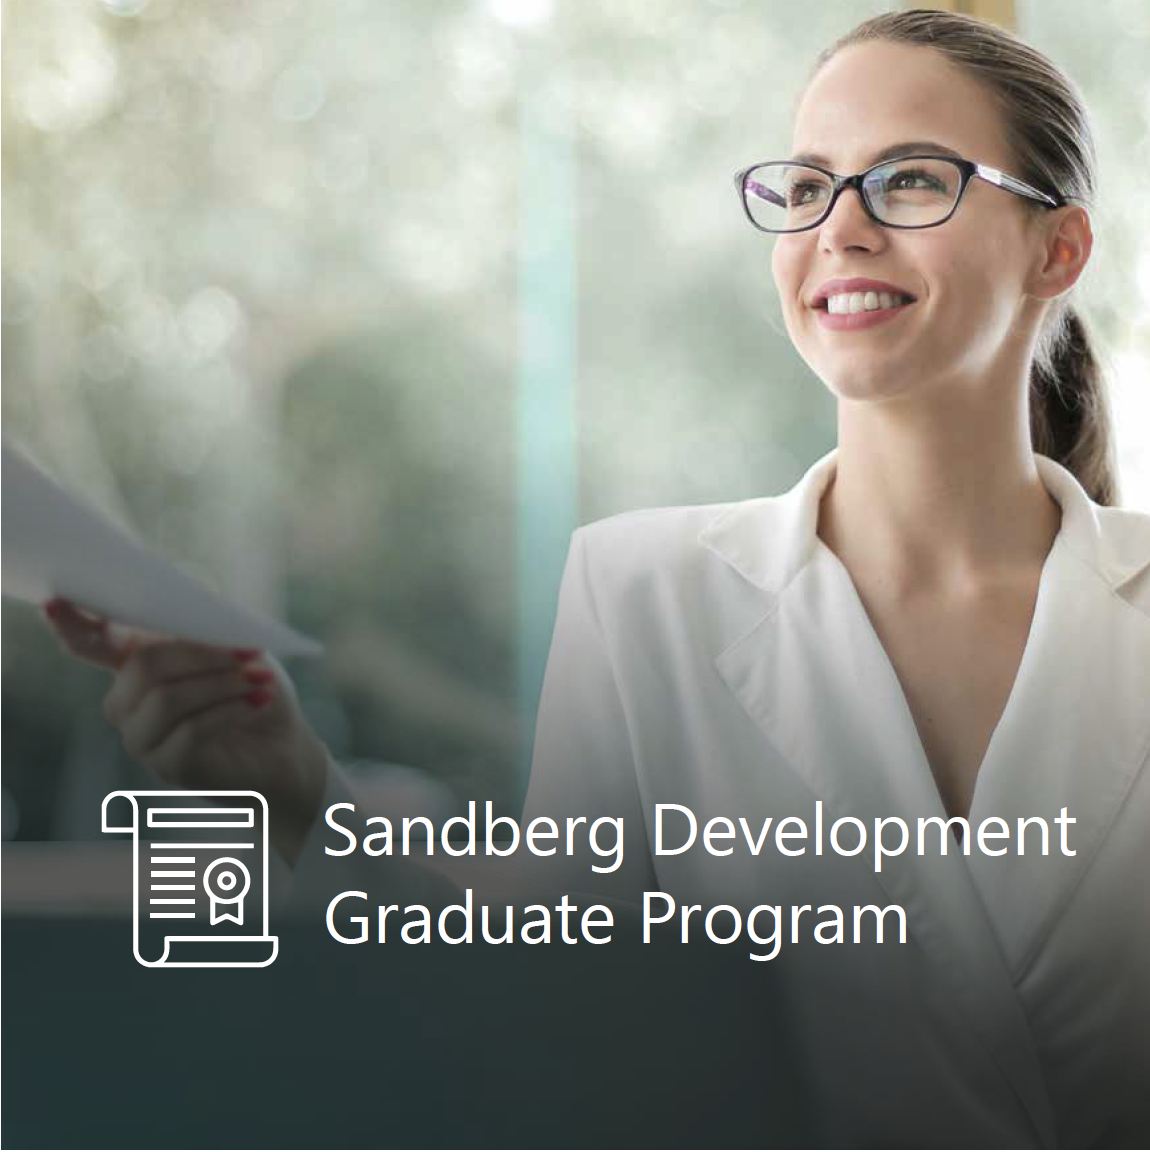 Sandberg Development Graduate Program[70]